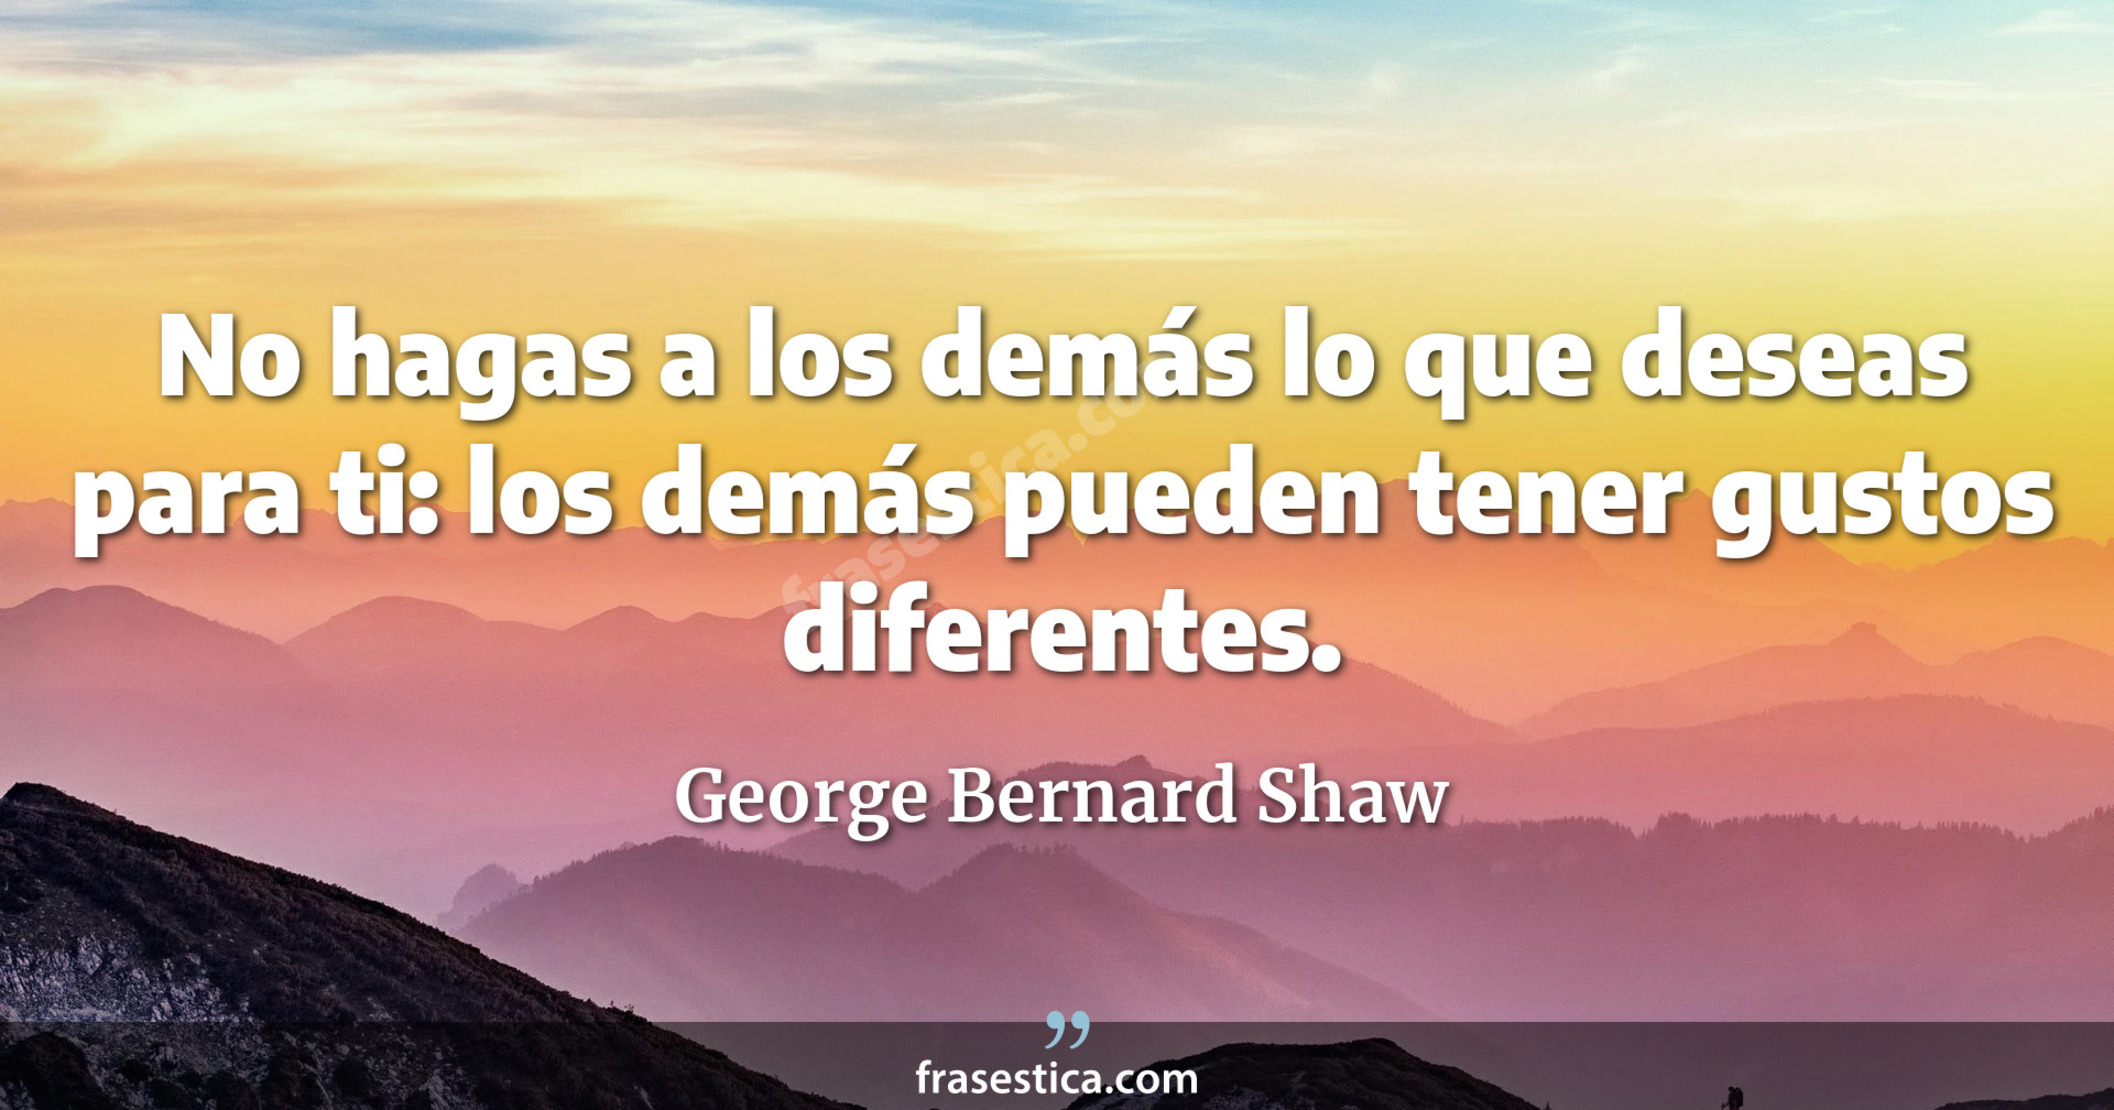 No hagas a los demás lo que deseas para ti: los demás pueden tener gustos diferentes. - George Bernard Shaw